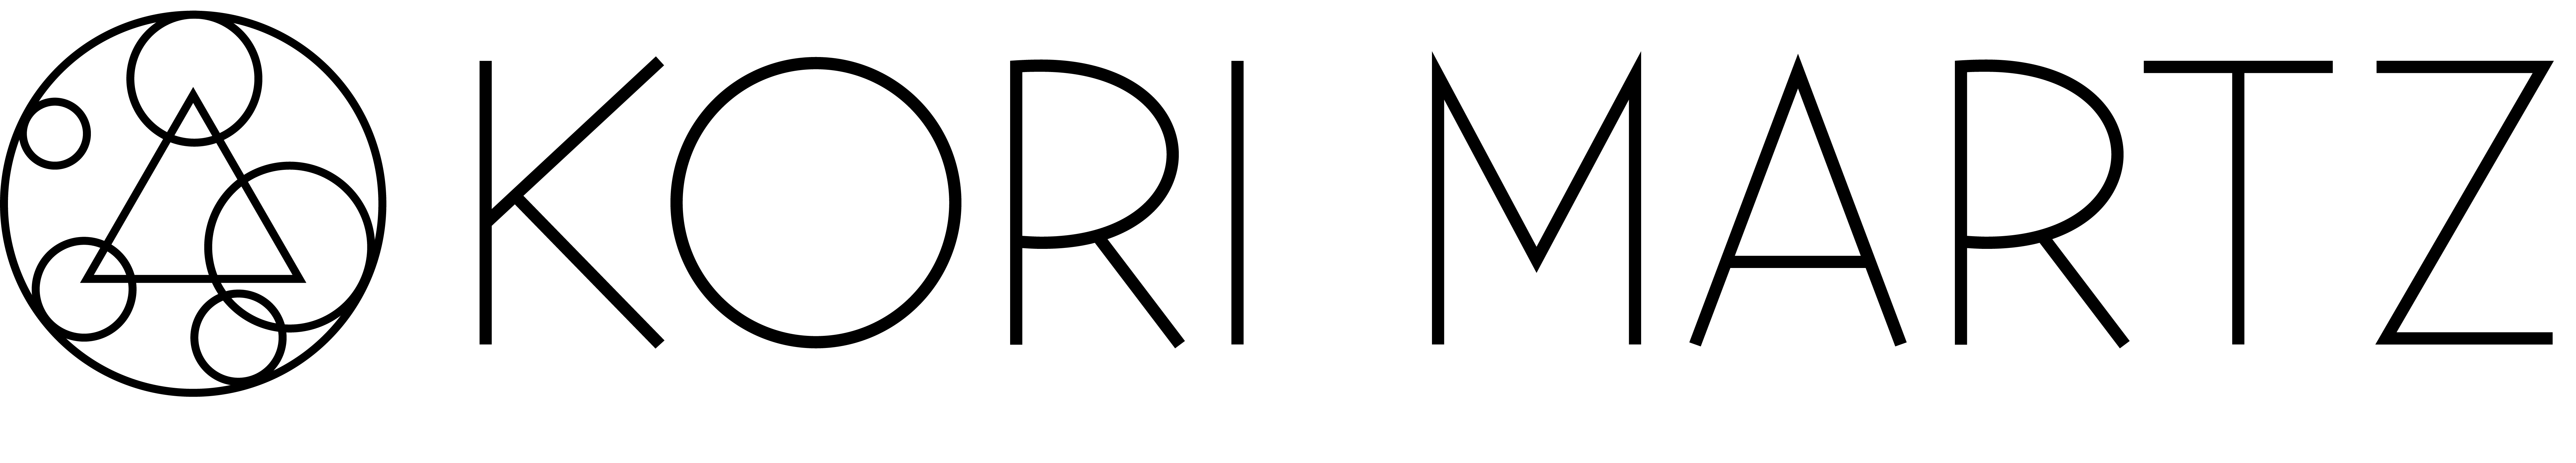 KORI logo